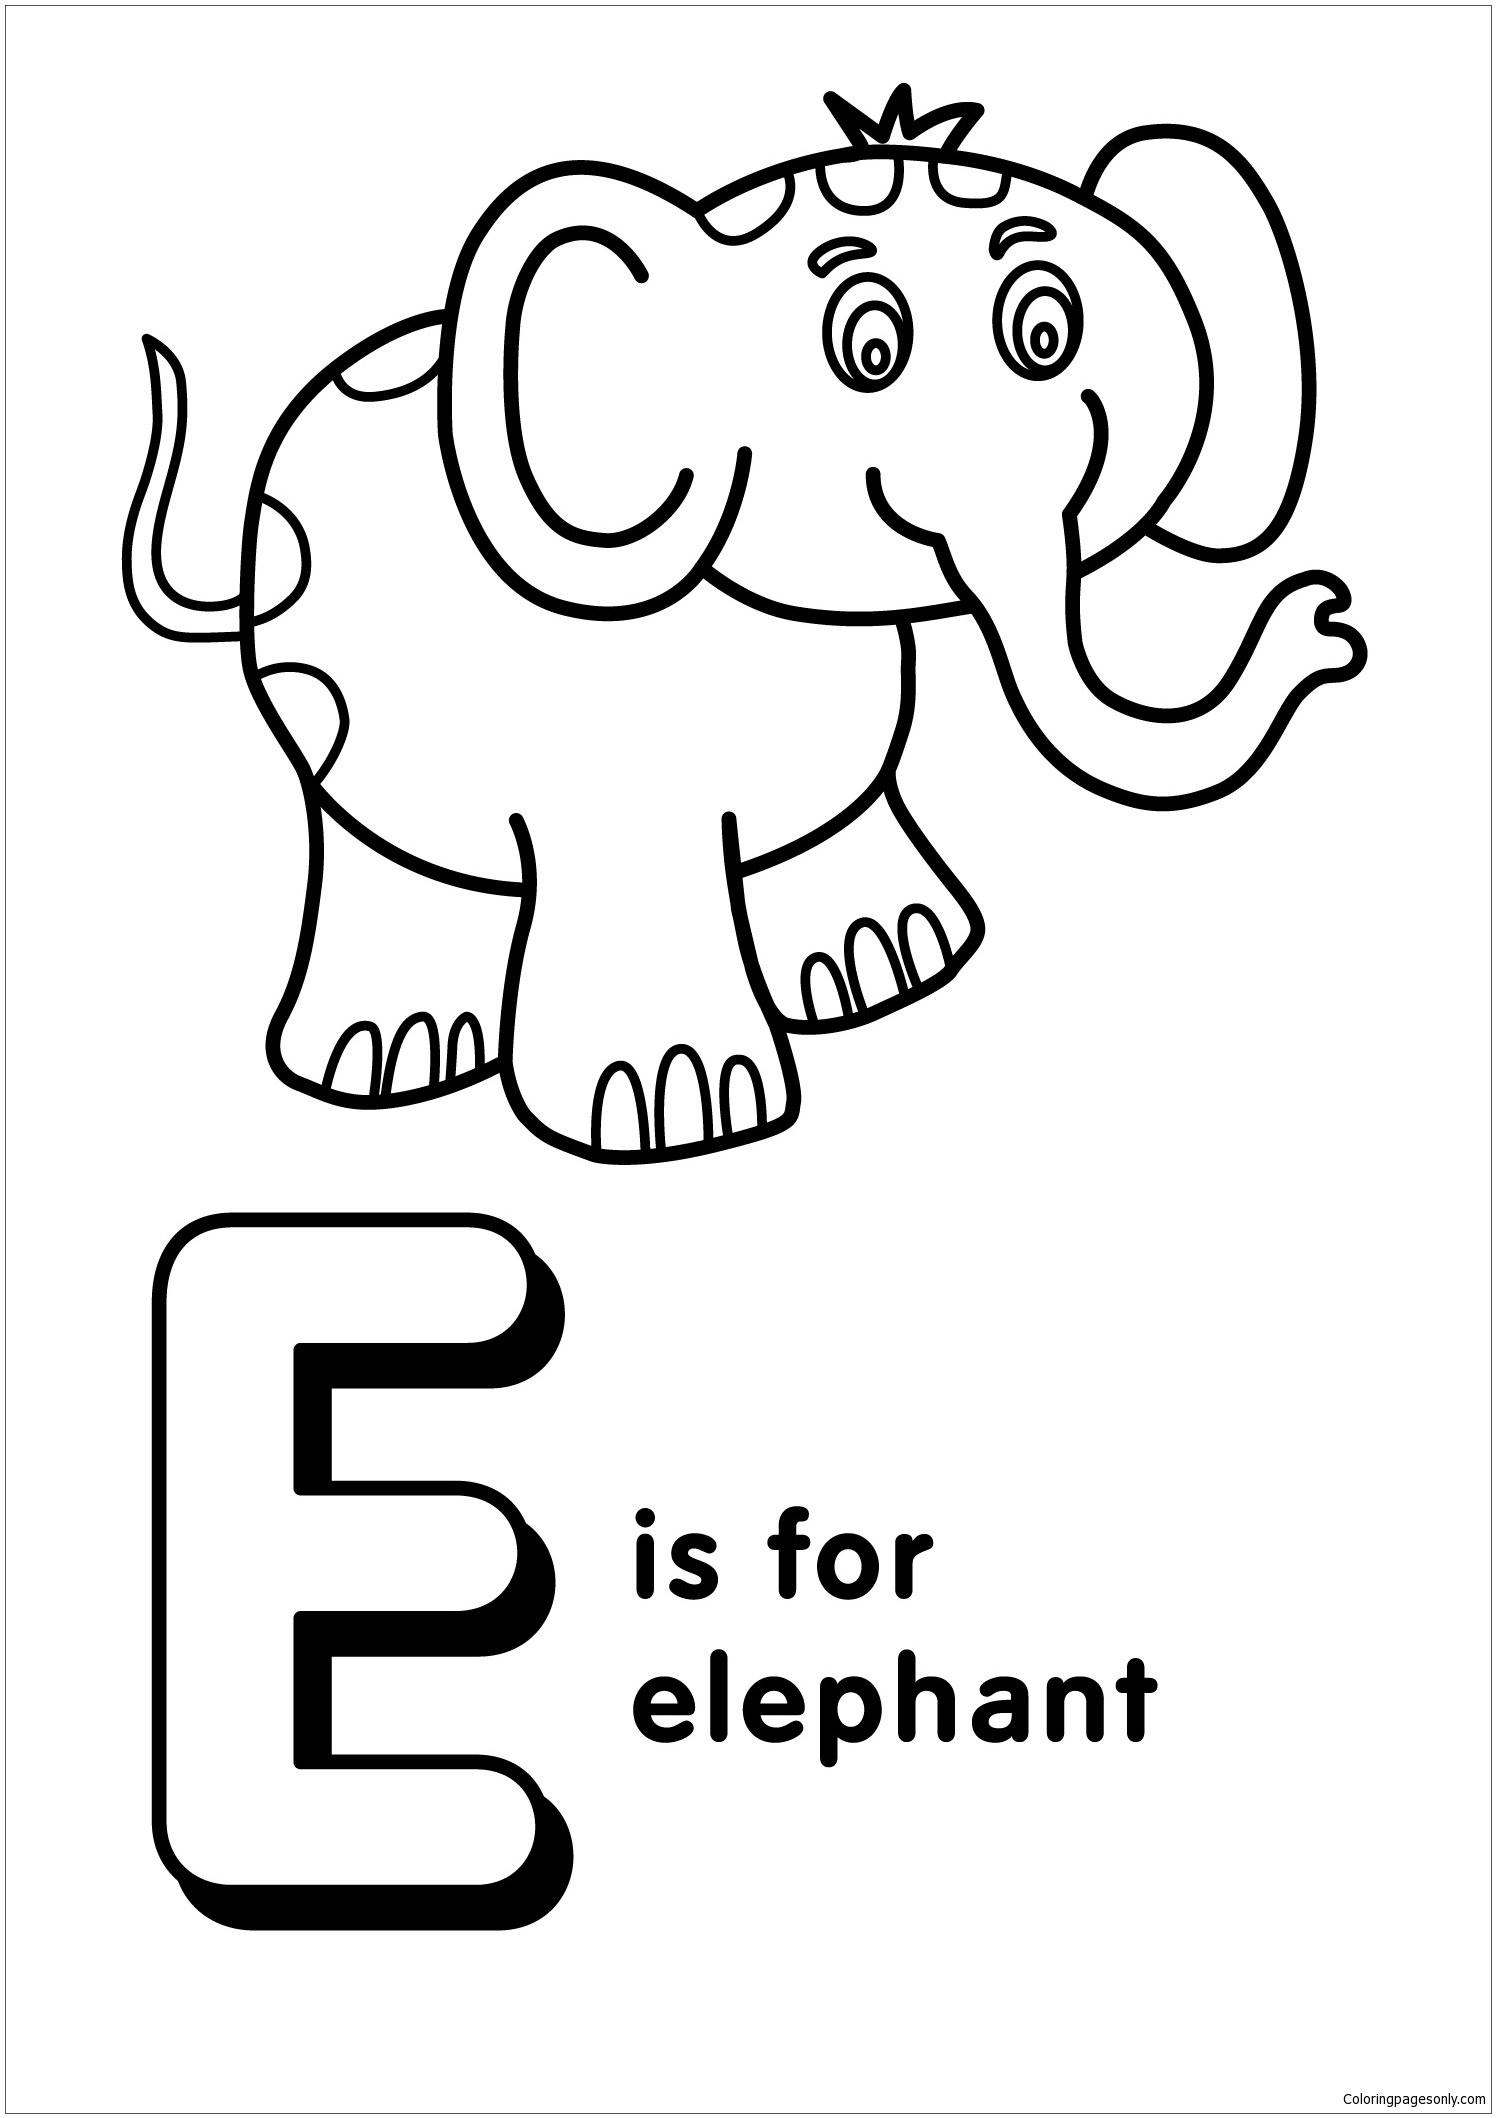 La lettera E sta per Elephant 2 dalla lettera E